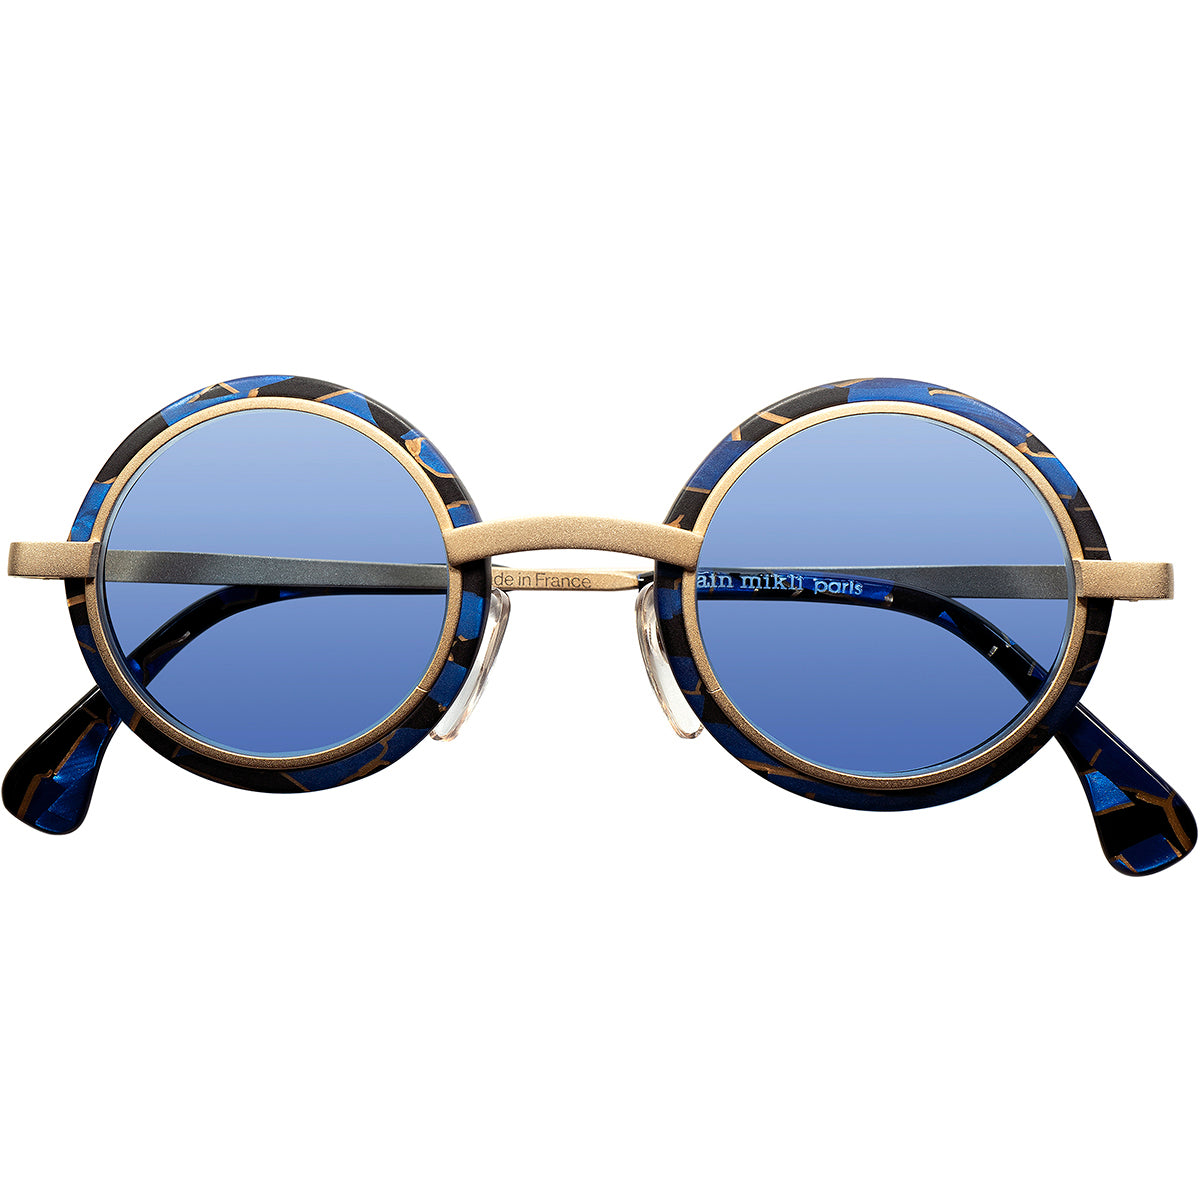 シルエット眼鏡1990ブルーサングラス/メガネ